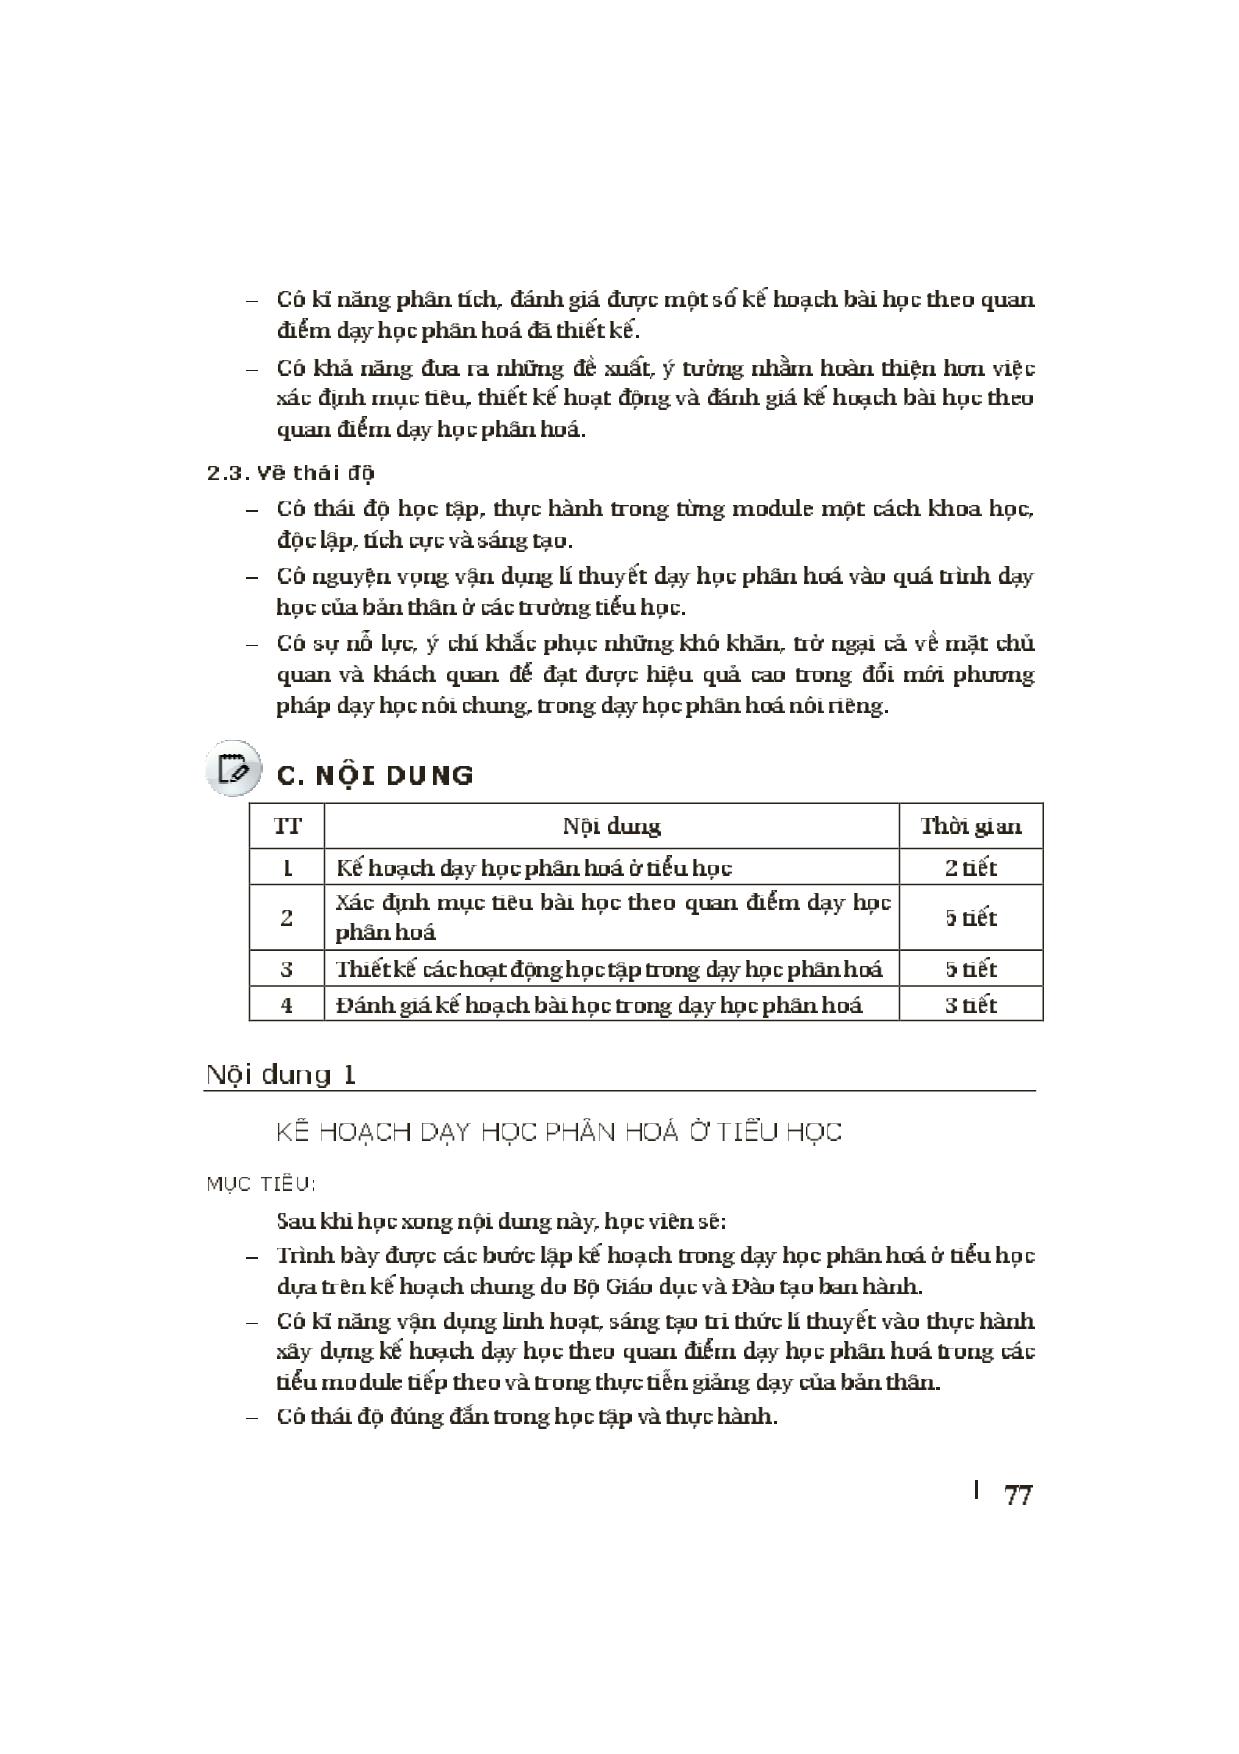 Module Tiểu học 33: Thực hành dạy học phân hóa ở Tiểu học trang 3